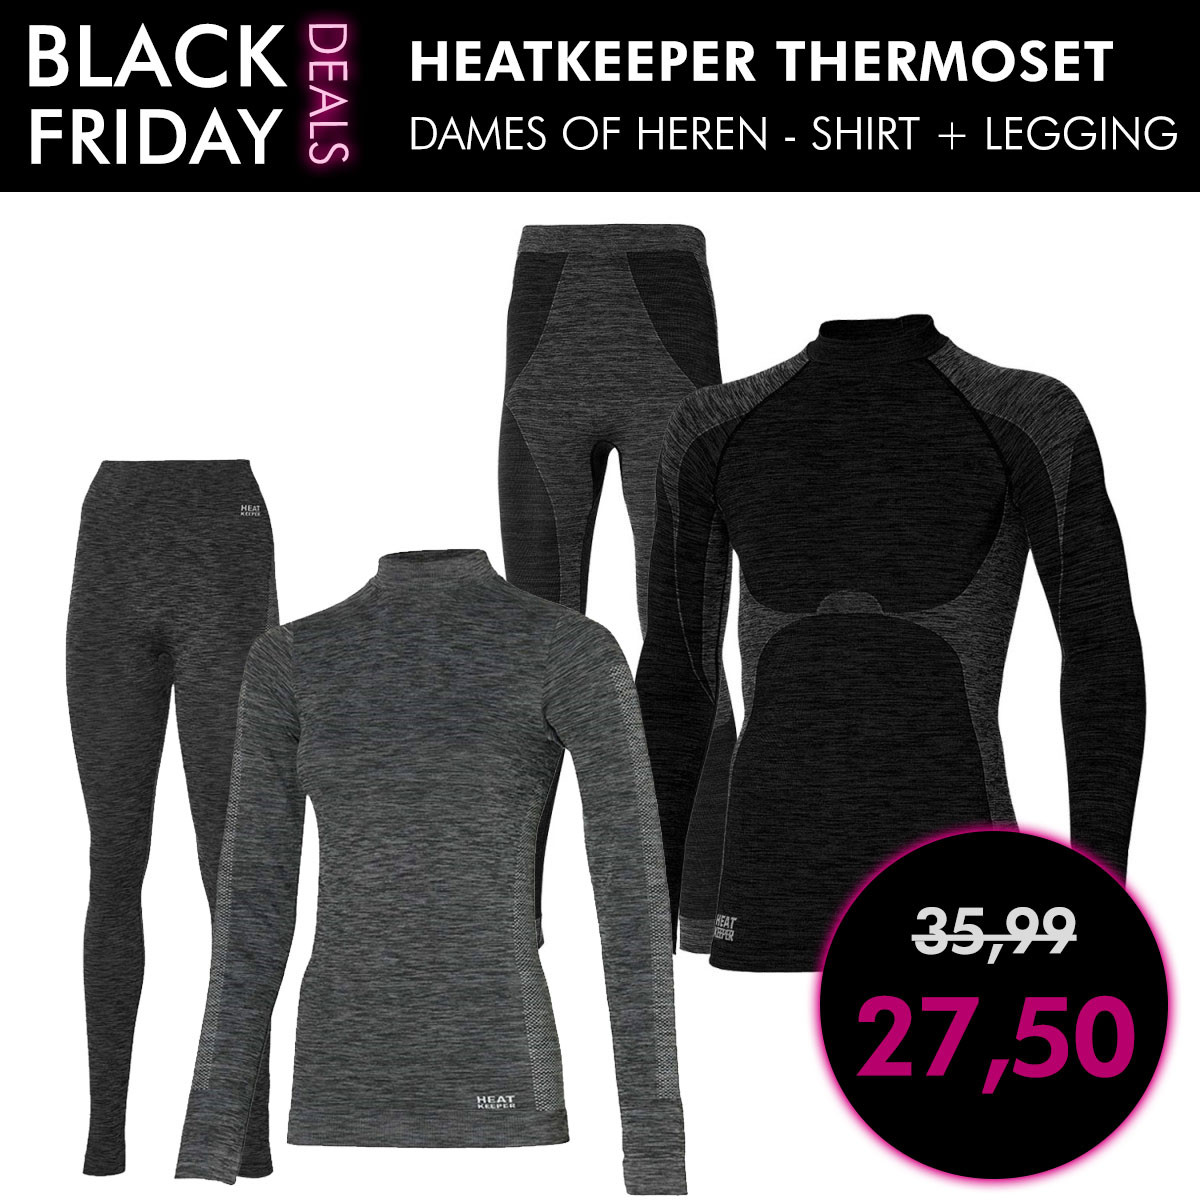 black-friday-dagaanbieding-heatkeeper-thermoset-dames-heren-shirt-en-legging